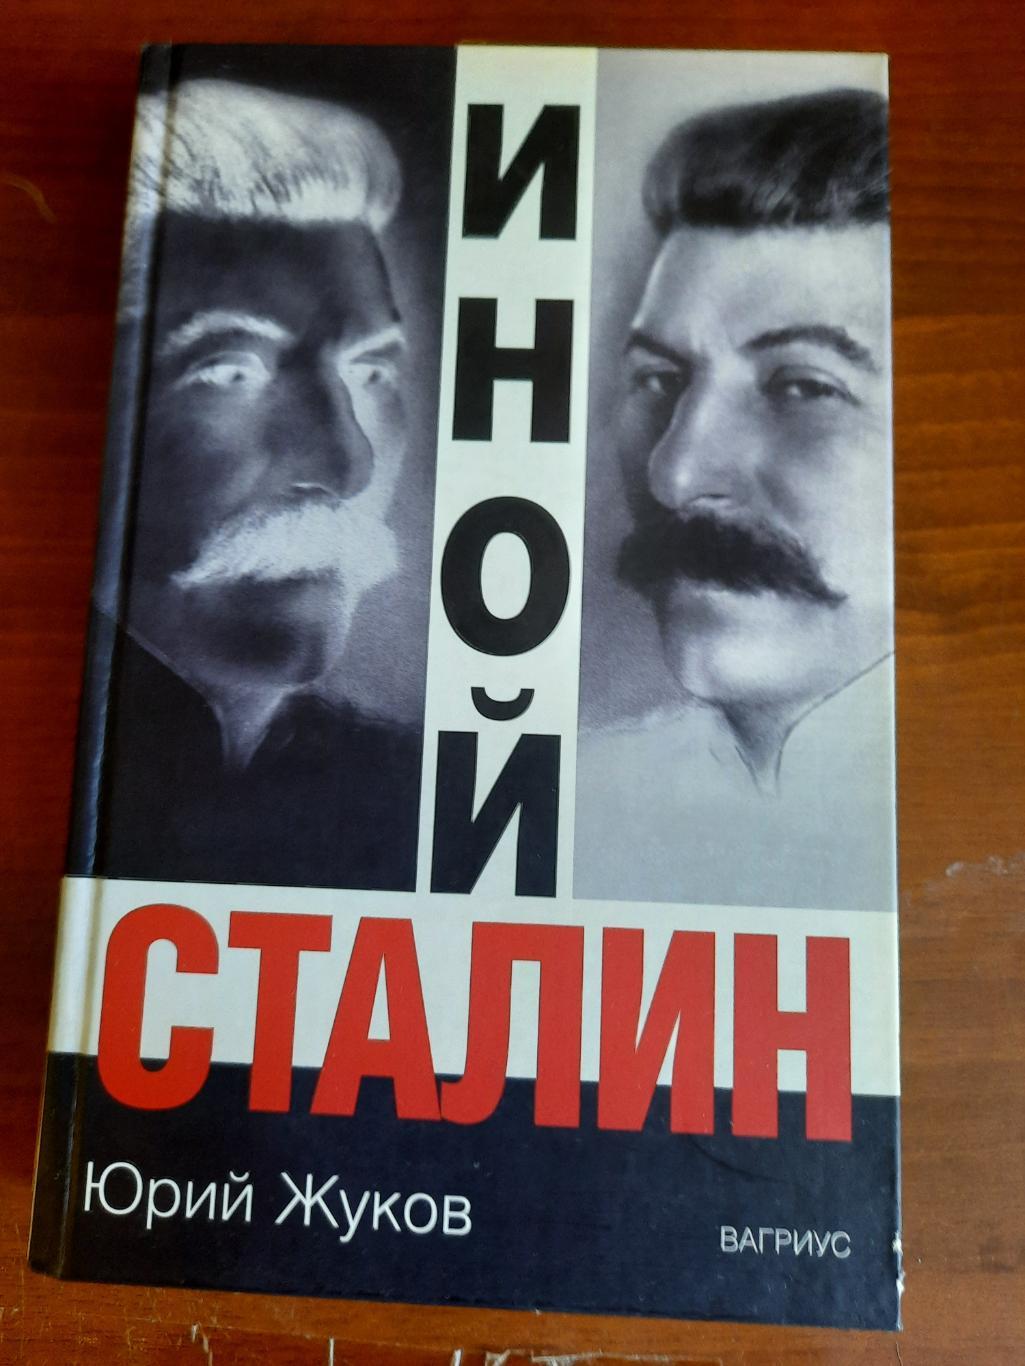 Юрий Жуков. Иной Сталин